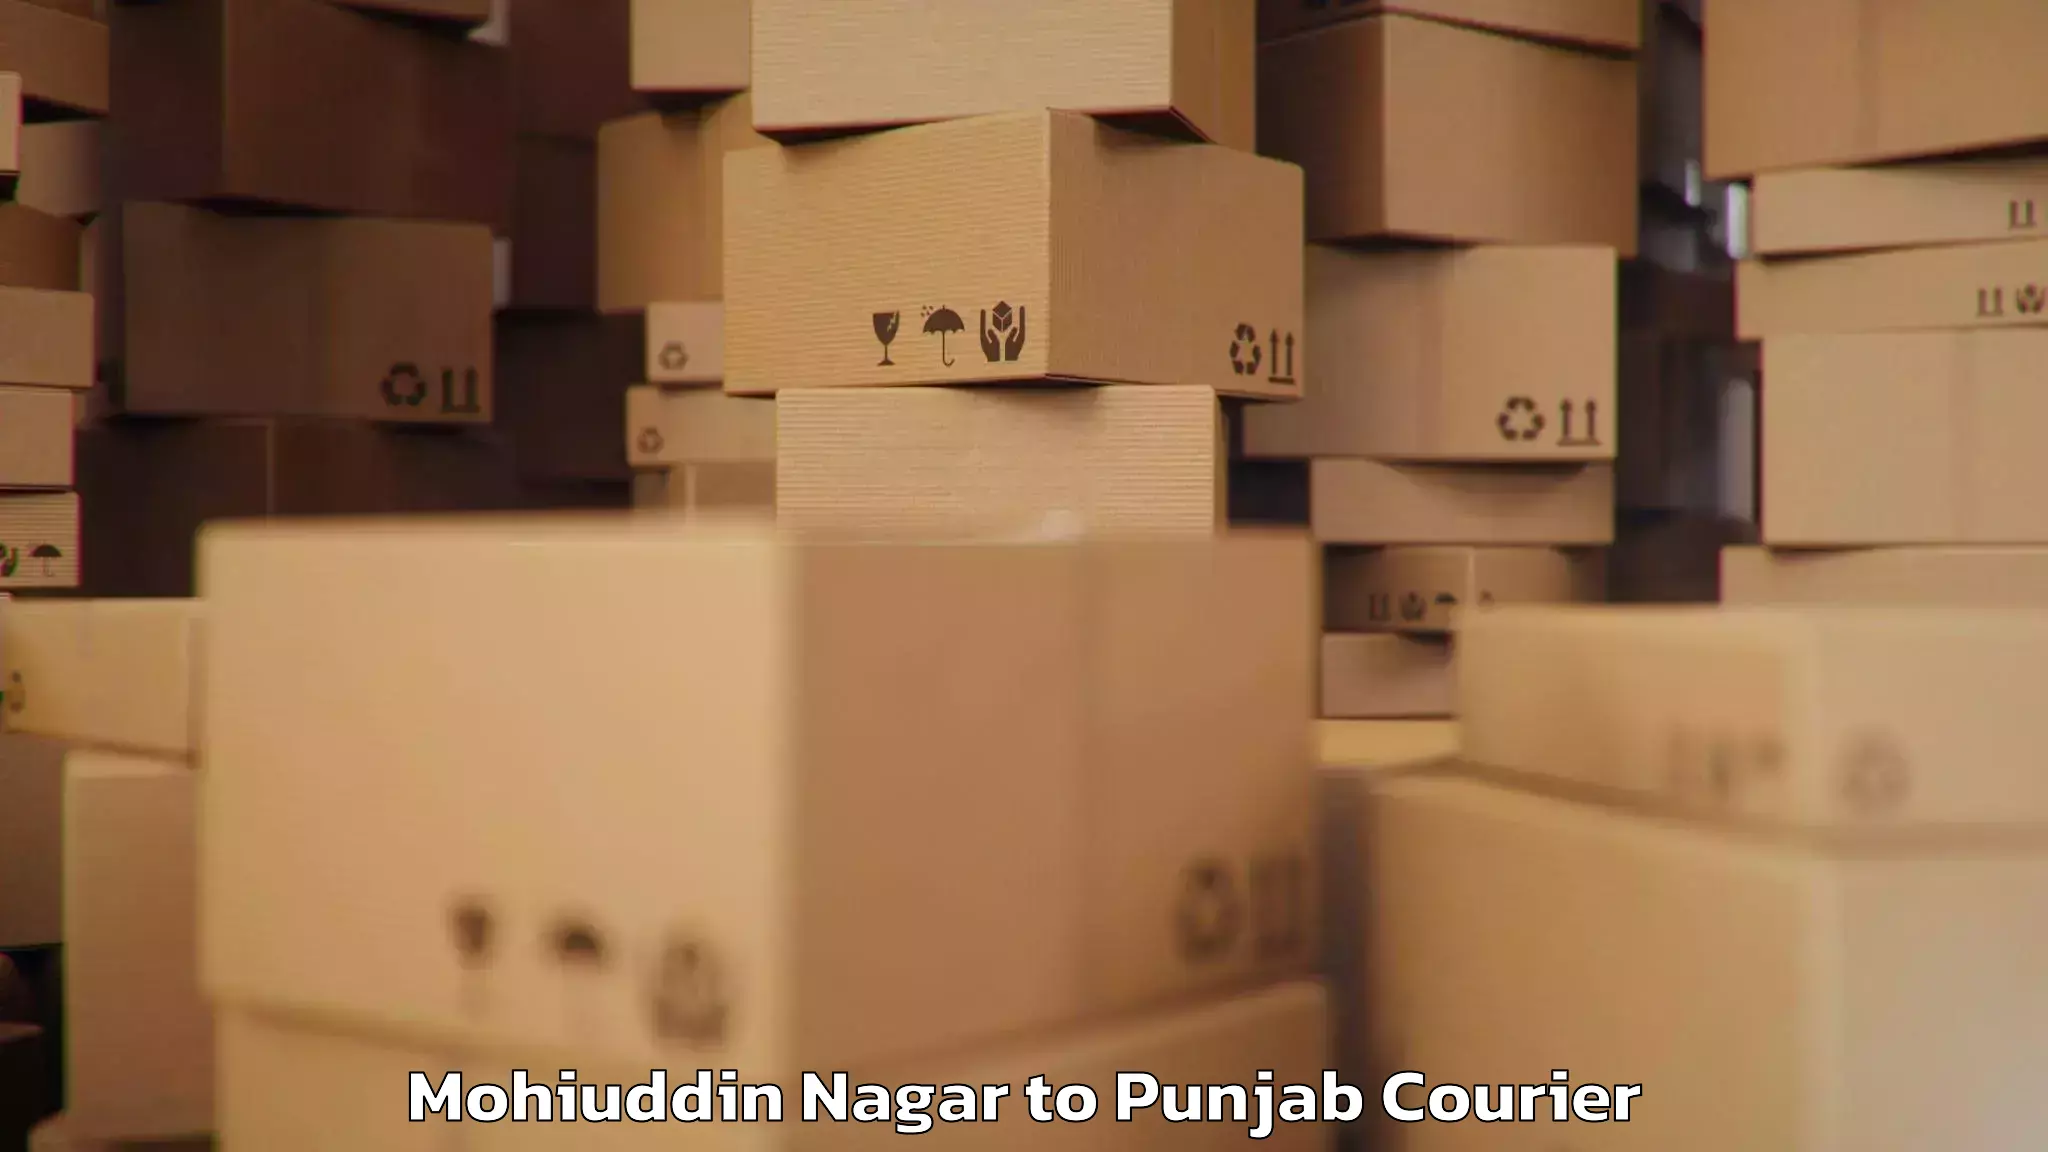 Urban luggage shipping Mohiuddin Nagar to Central University of Punjab Bathinda